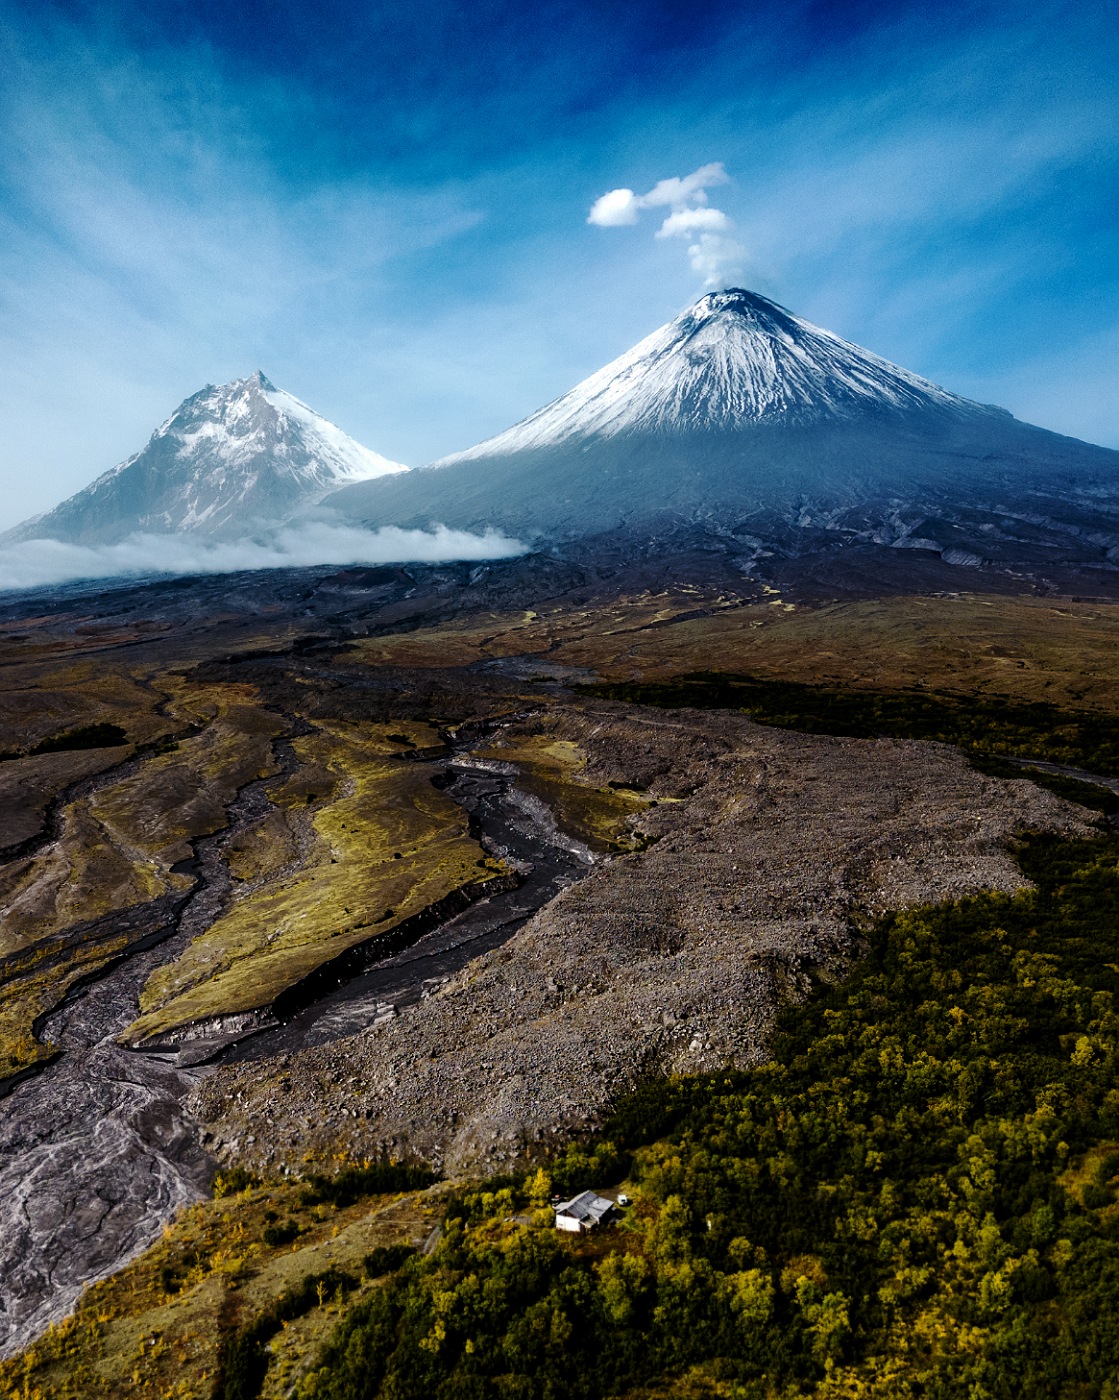 вулкан, ключевской, аэрофотосъемки, камчатка, извержение, Karasev Pavel